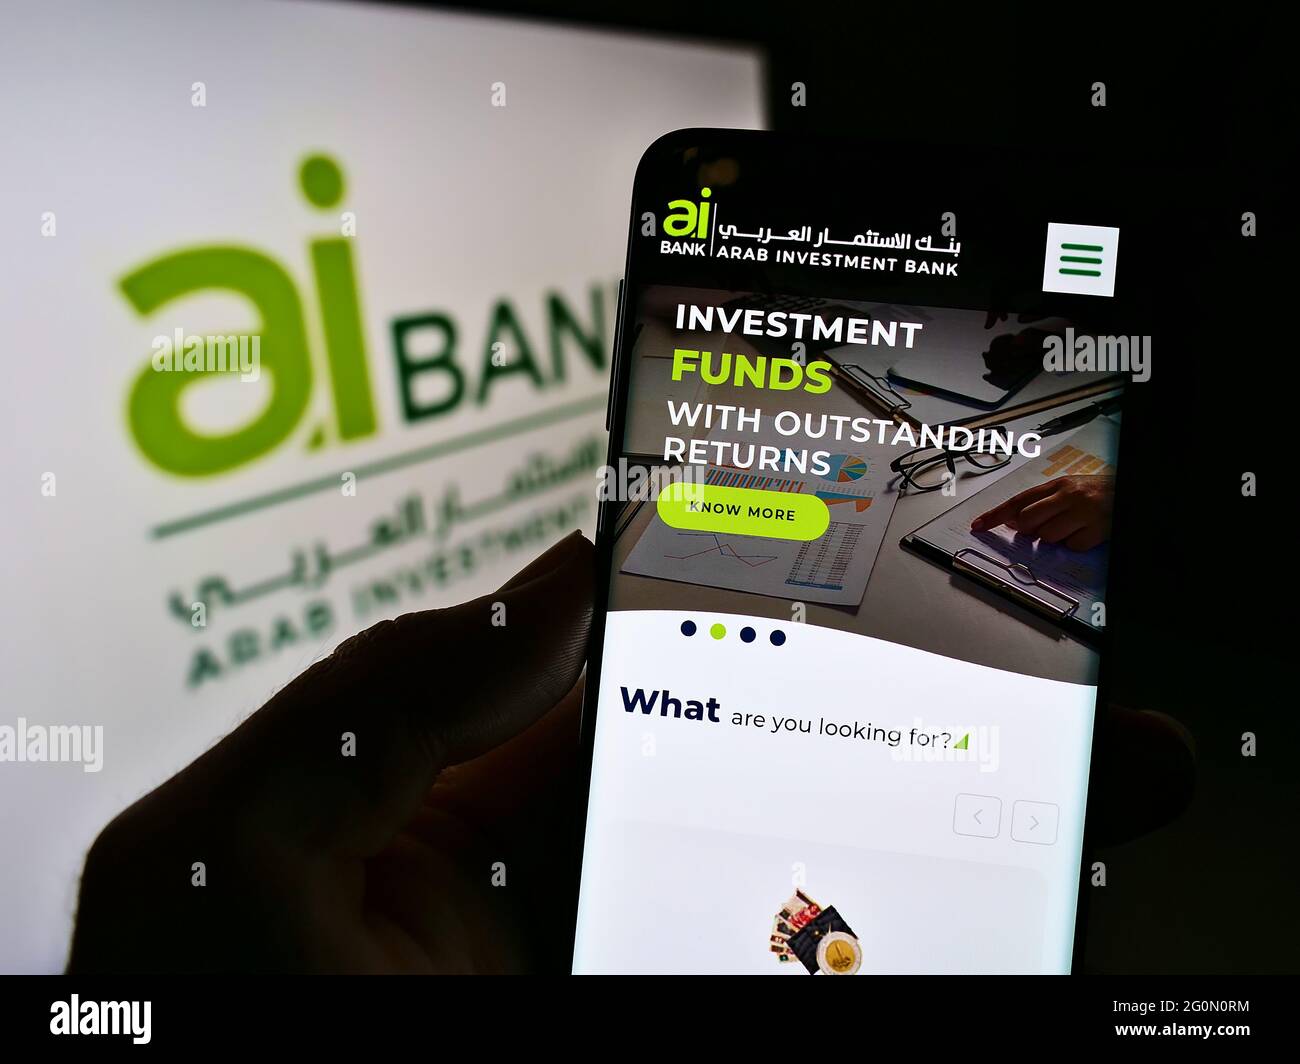 Persona que sostiene el teléfono móvil con el sitio web de la empresa financiera Arab Investment Bank (AIB Egipto) en la pantalla delante del logotipo. Enfoque en la pantalla del teléfono. Foto de stock